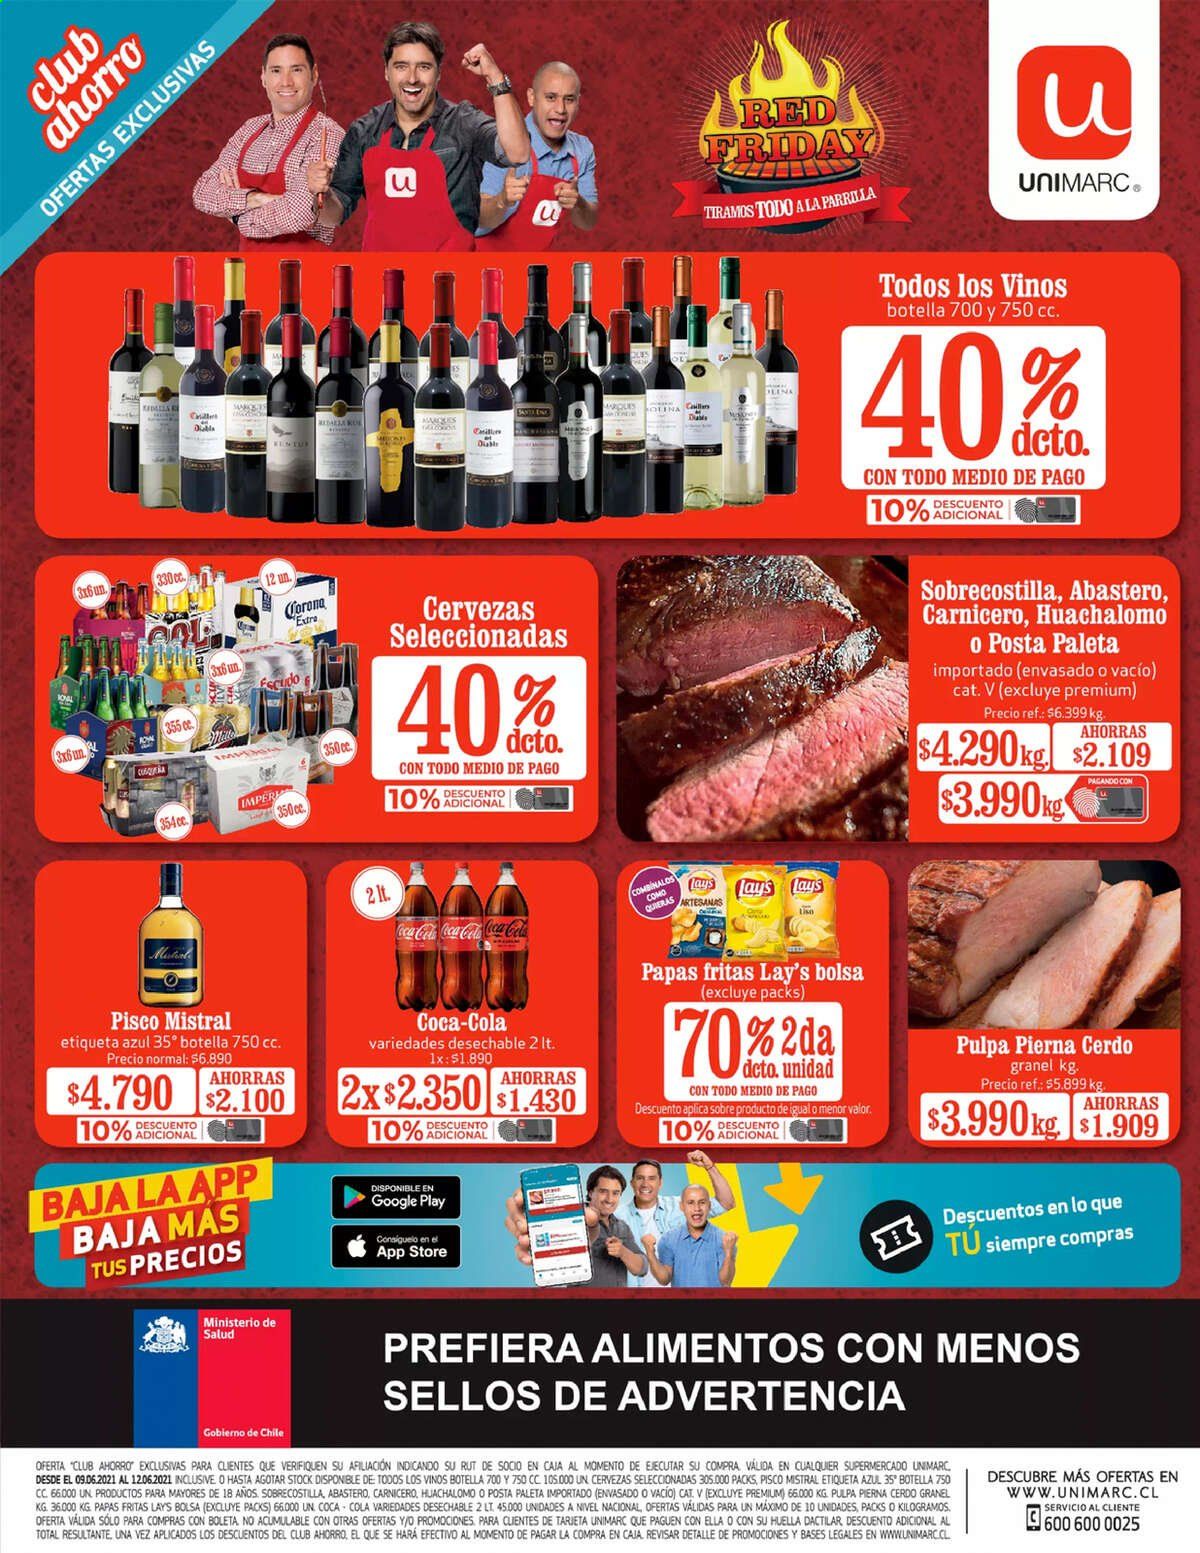 thumbnail - Catálogo Unimarc - 09.06.2021 - 12.06.2021 - Ventas - Corona, cerveza, papa, papas fritas, Lays, Coca-cola, bolso. Página 1.